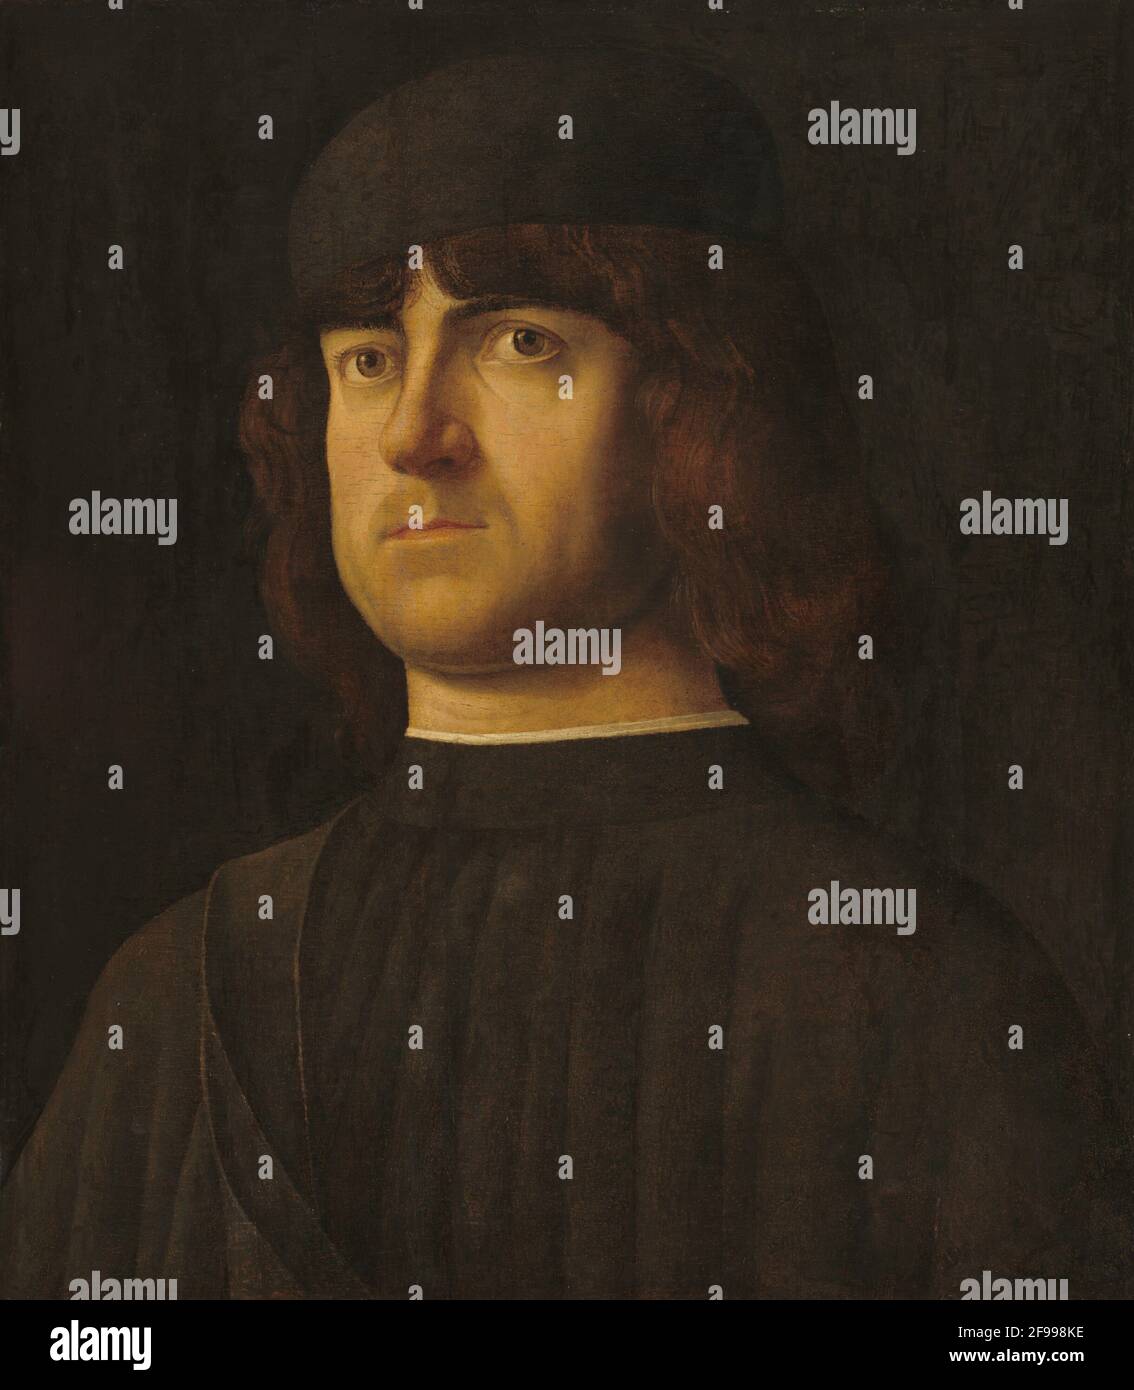 Portrait of a Man, c. 1495. Stock Photo